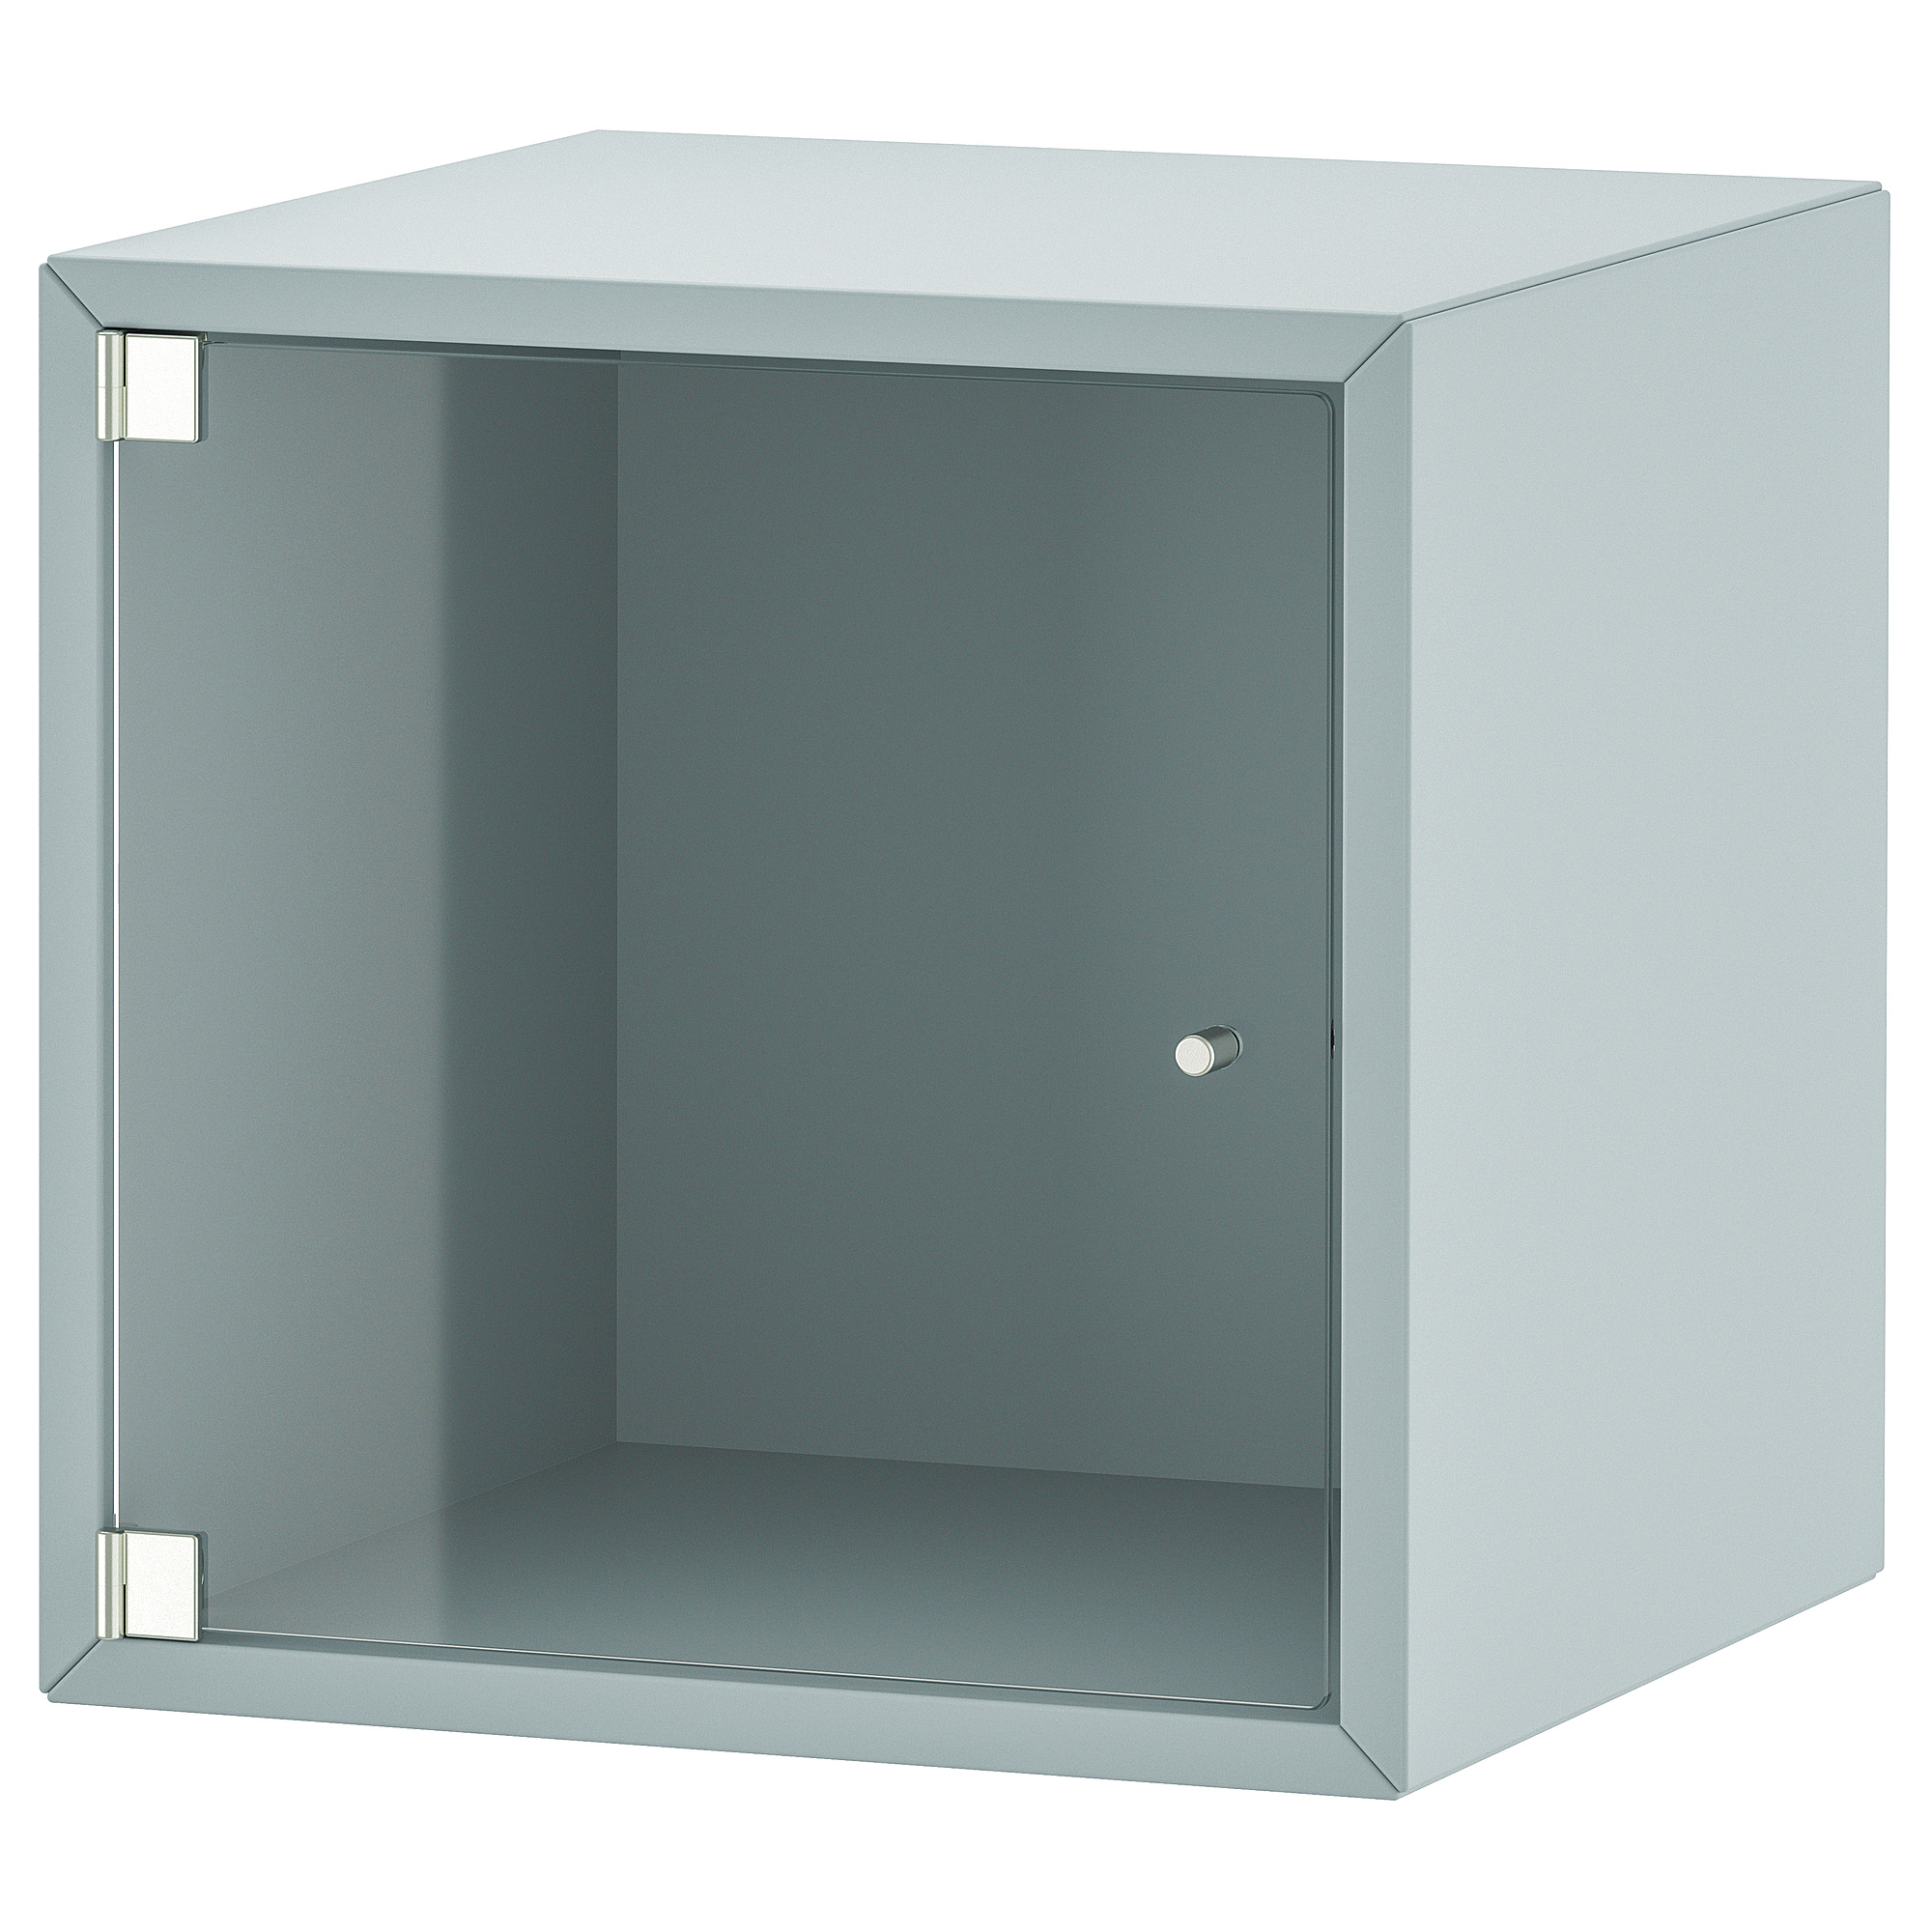 EKET wall cabinet with glass door